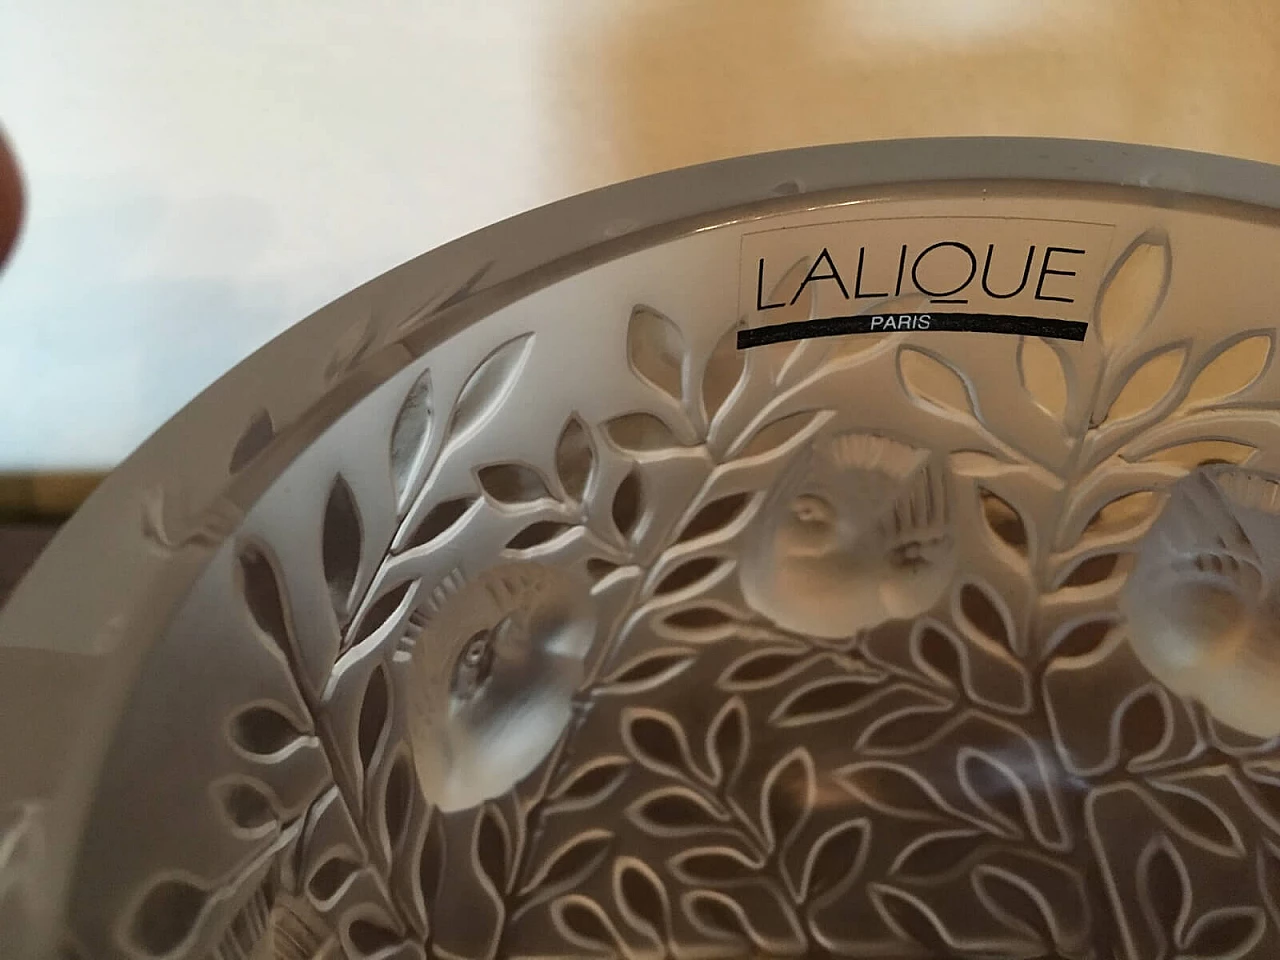 Vase "Elisabeth" by Lalique in crystal 9